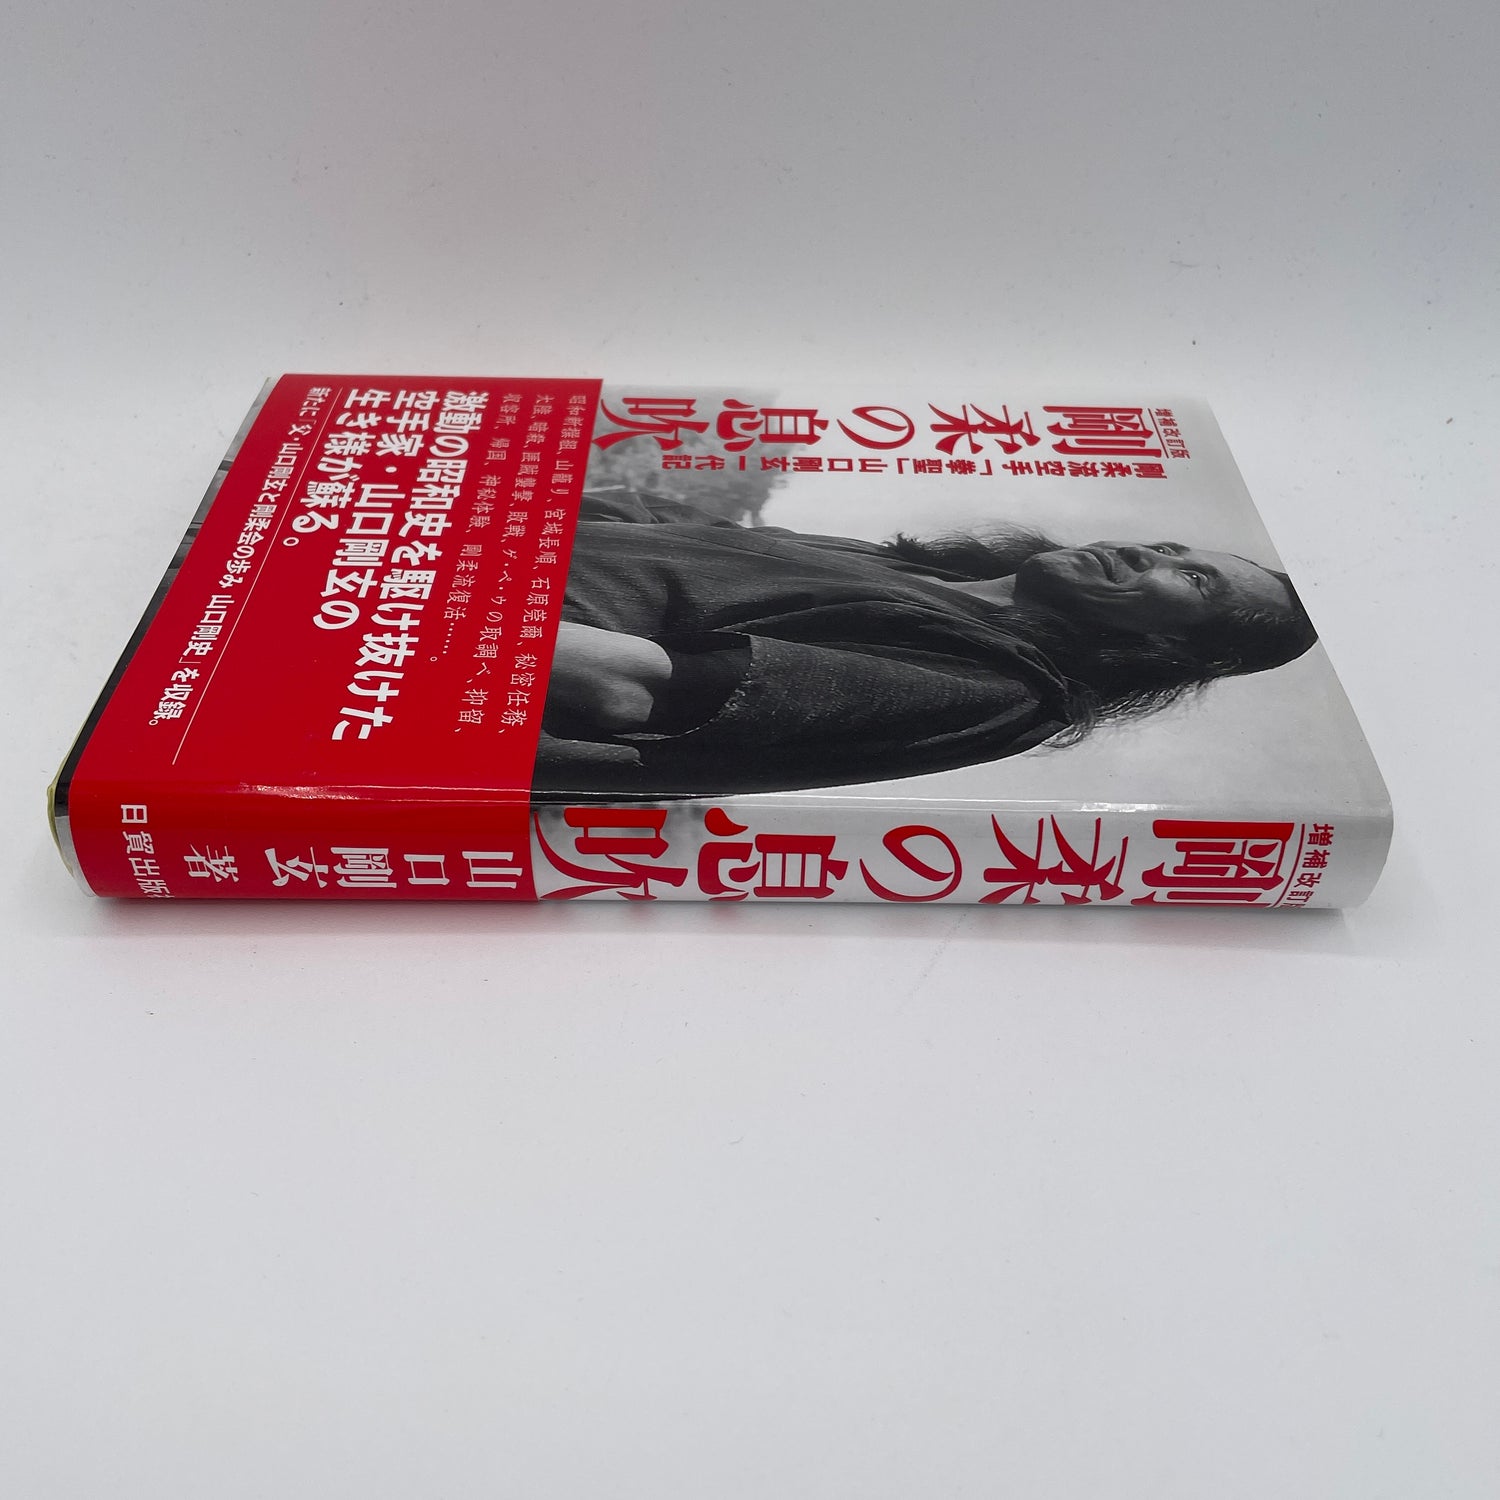 El aliento de Goju Ryu Karate (revisado) Libro de Gogen Yamaguchi